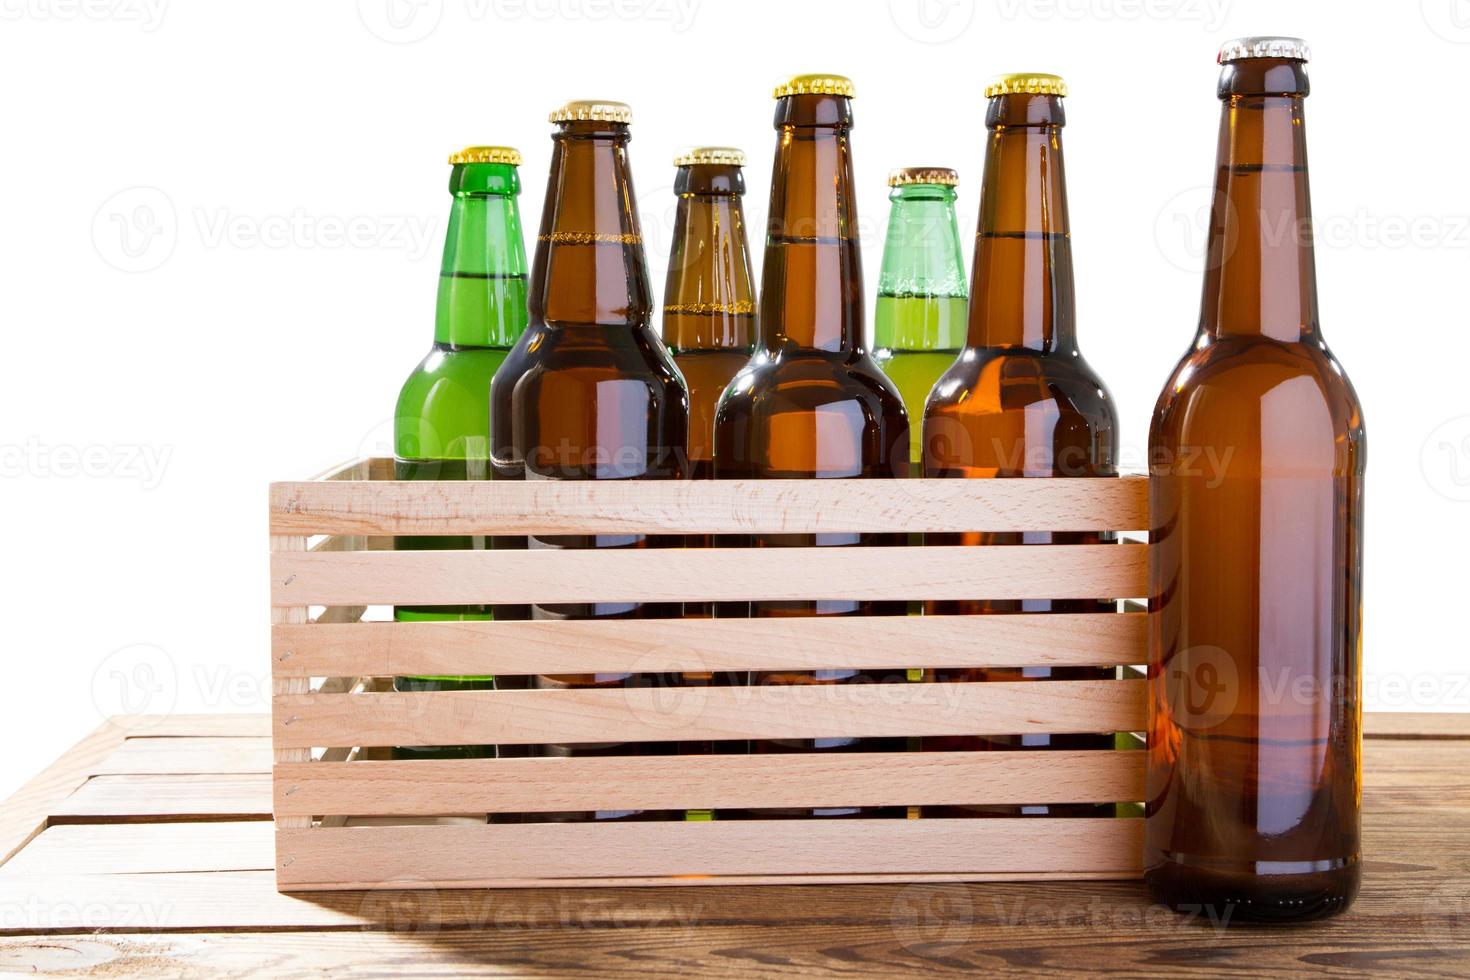 de nombreuses bouteilles en verre de différentes bières sur une boîte en bois sans étiquette isolée, photo de différentes bouteilles de bière pleines sans étiquette. chemin de détourage séparé pour chaque bouteille inclus.